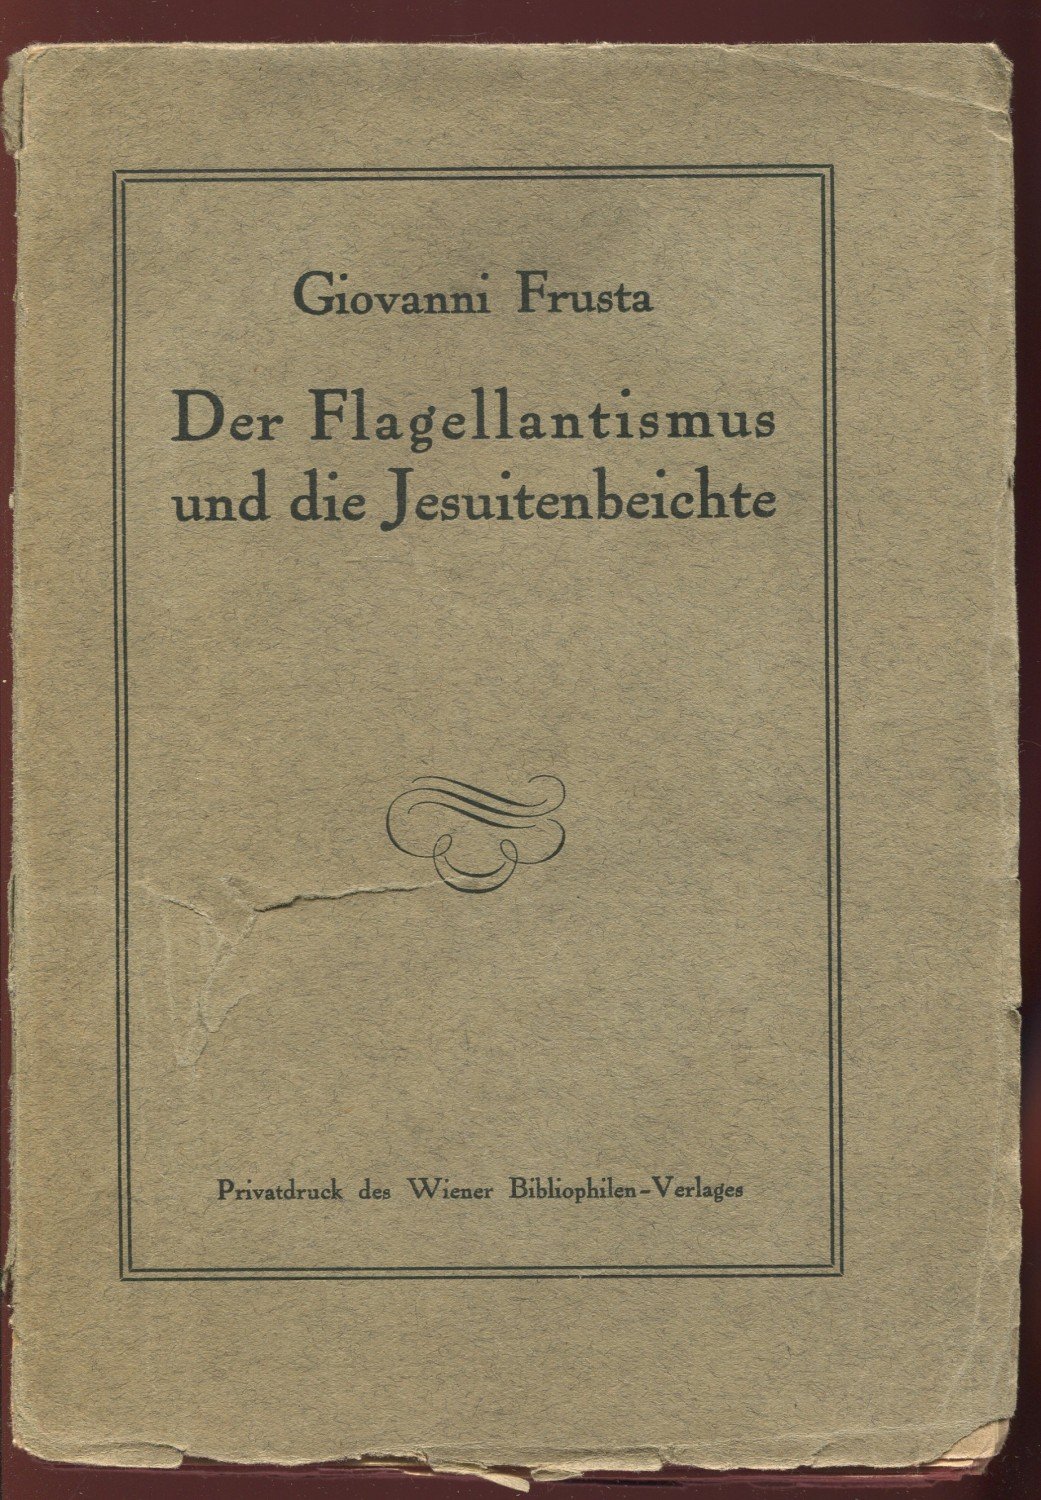 Der Flagellantismus und die Jesuitenbeichte.“ (Giovanni Frusta) – Buch  antiquarisch kaufen – A022NBjL01ZZR